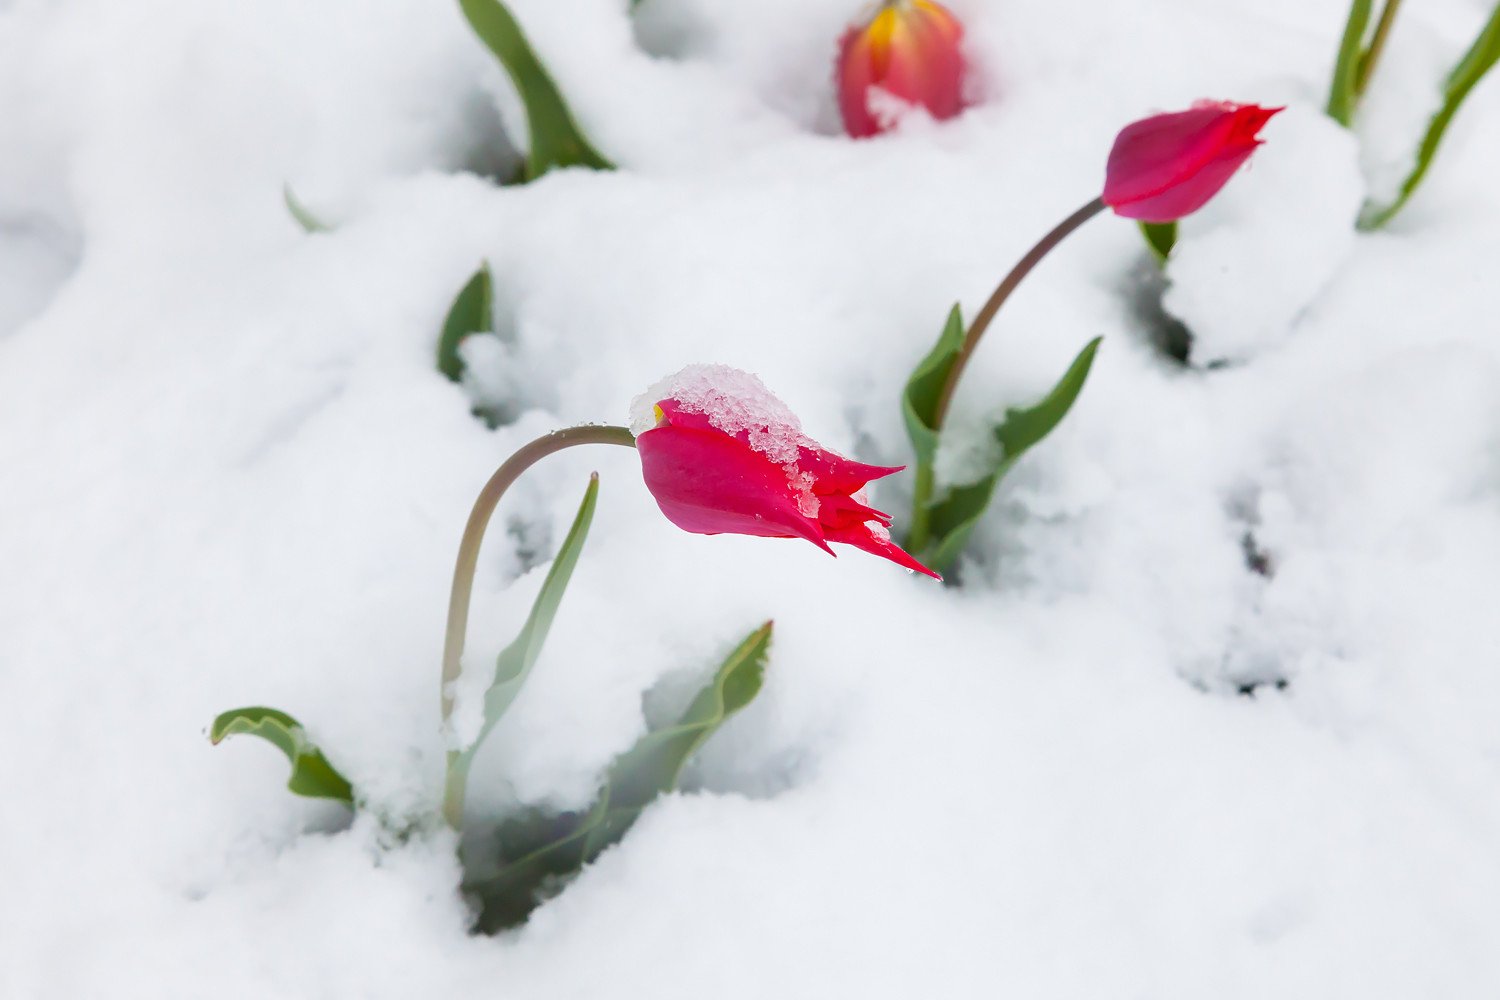 Картинки цветов в снегу. Цветы под снегом. Весенние цветы в снегу. Красивые весенние цветы на снегу.